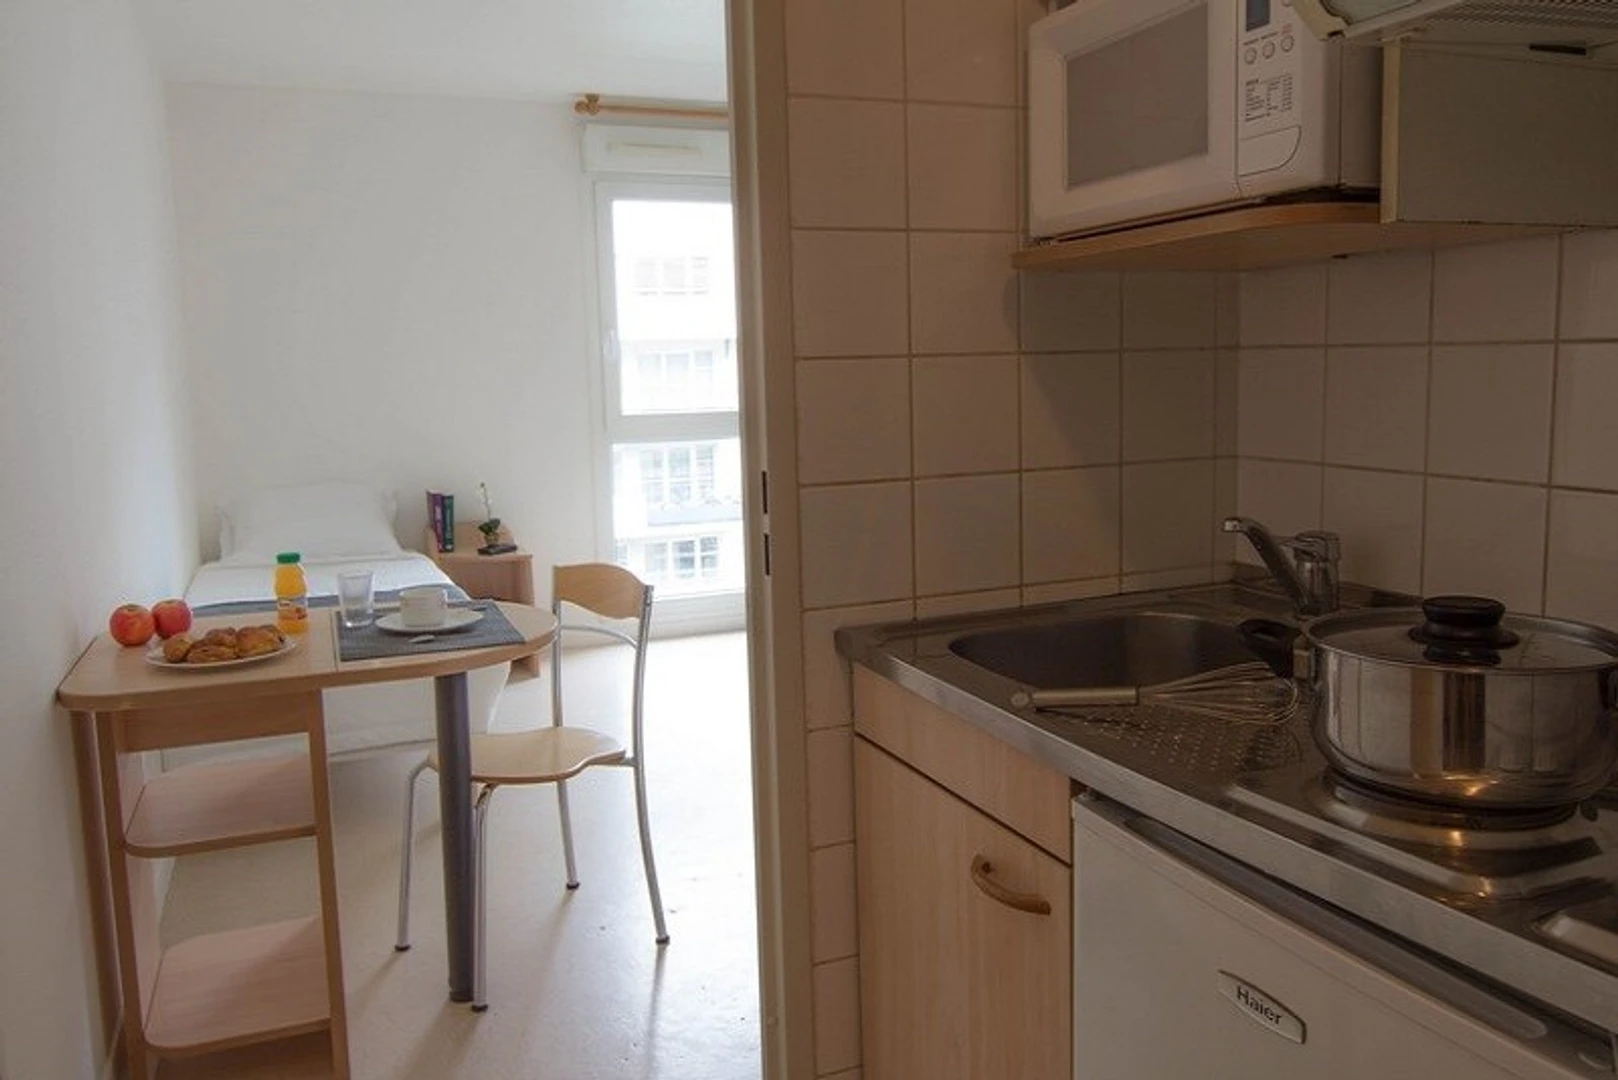 Chambre à louer dans un appartement en colocation à Metz